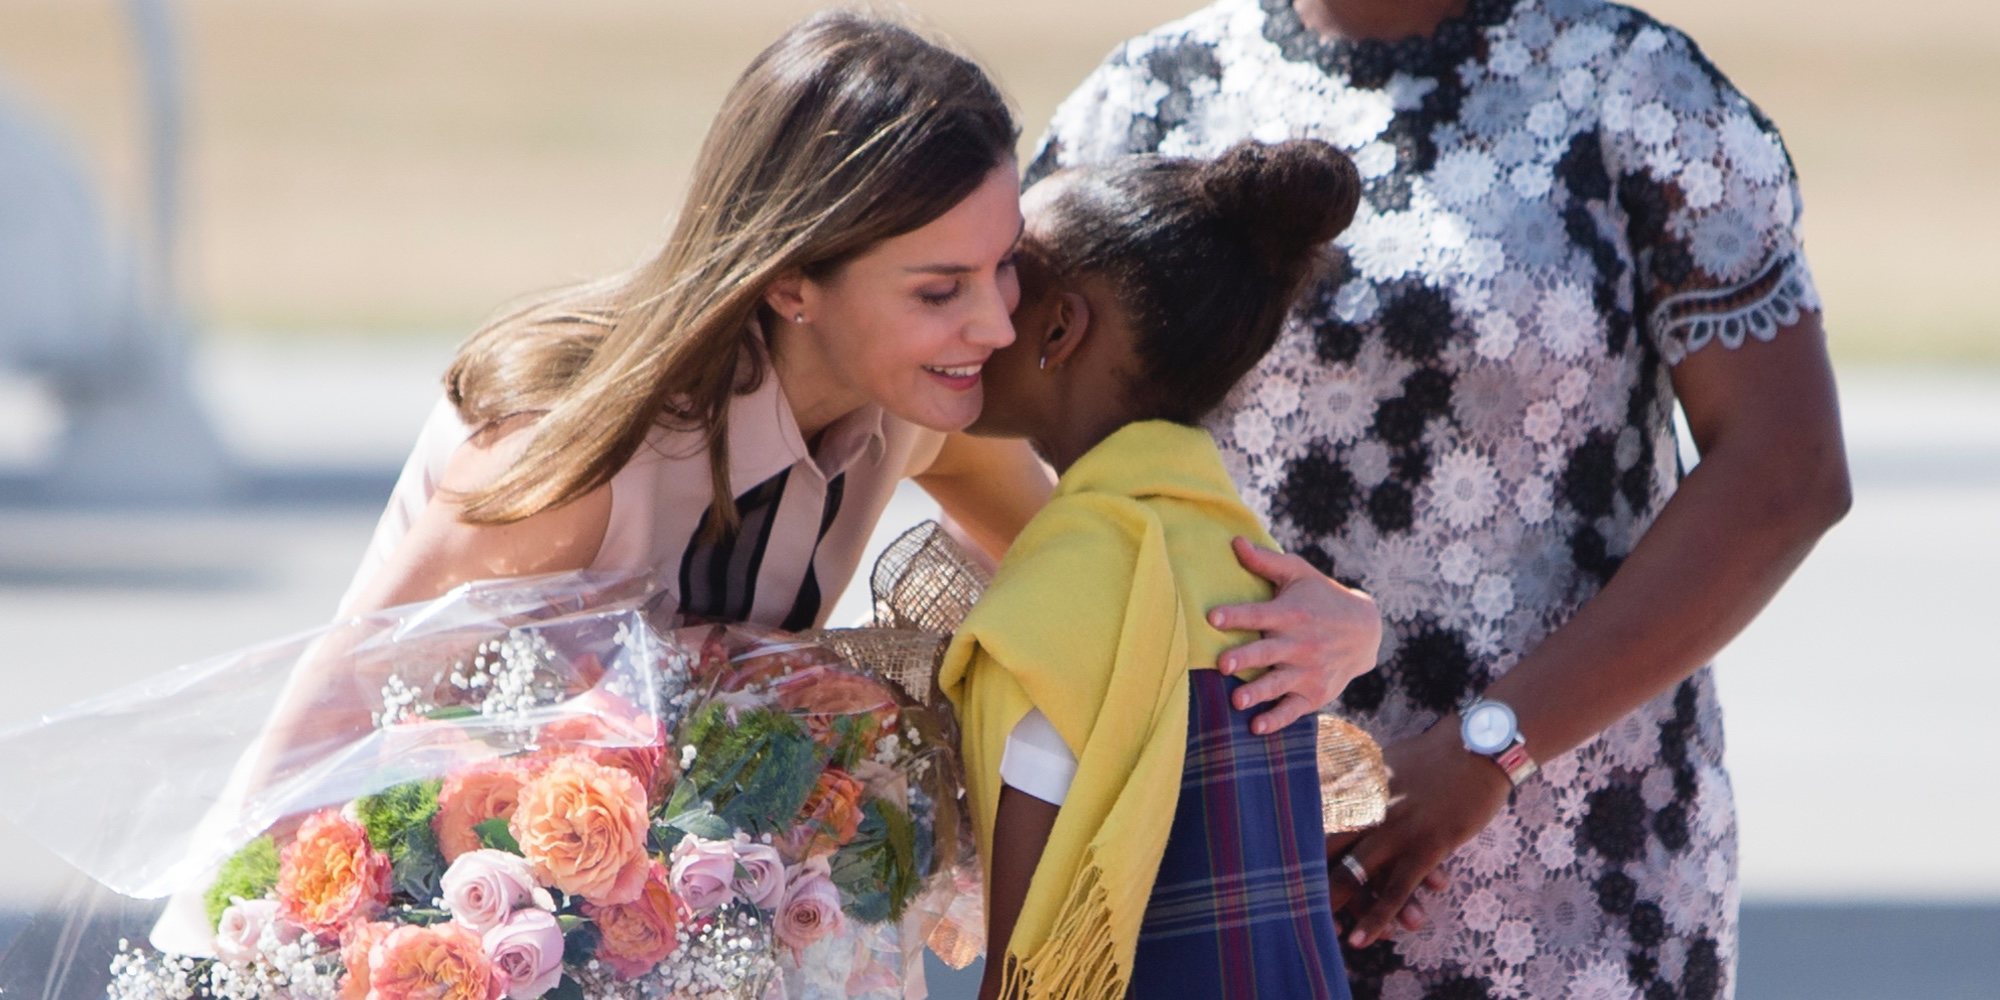 La Reina Letizia, de República Dominicana a Haití: un vestido floreado, abrazos, bananos y solidaridad